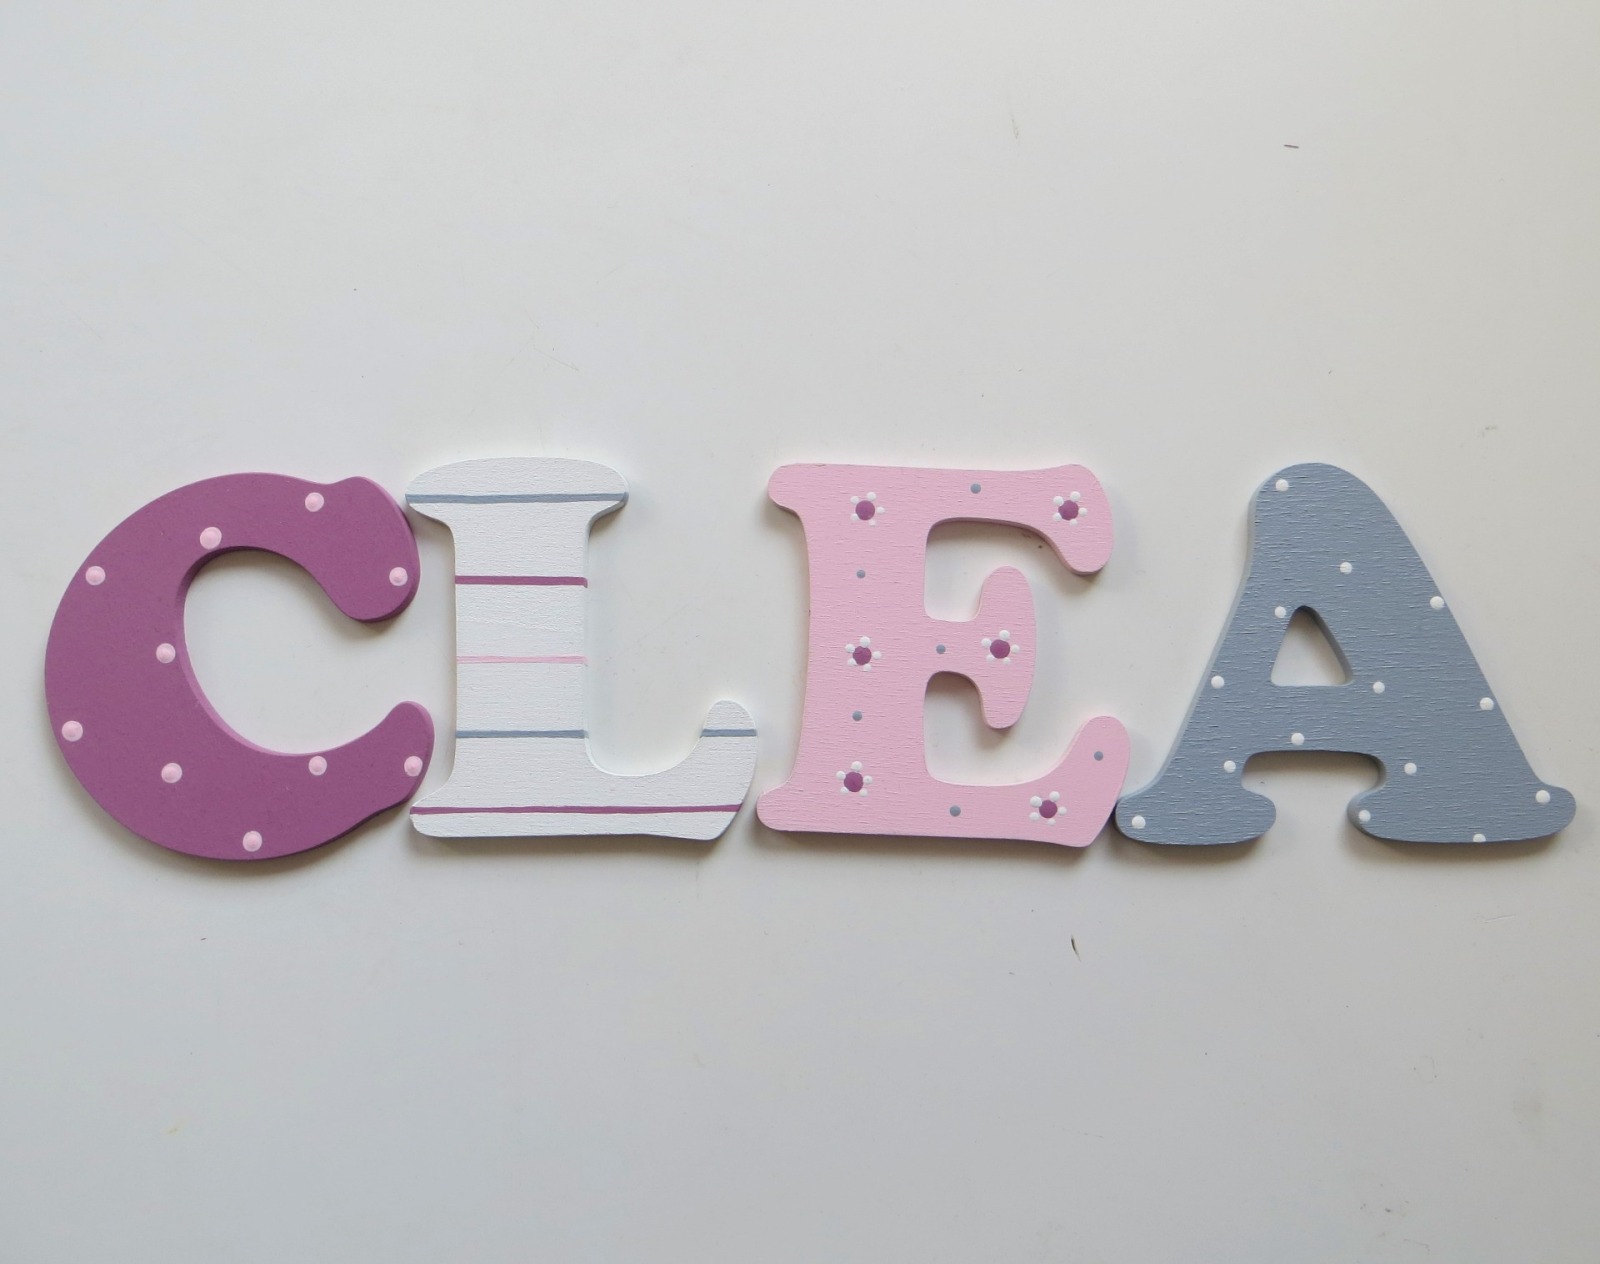 8cm Holzbuchstaben Kinderzimmer personalisiert in malve rose grau und weiß